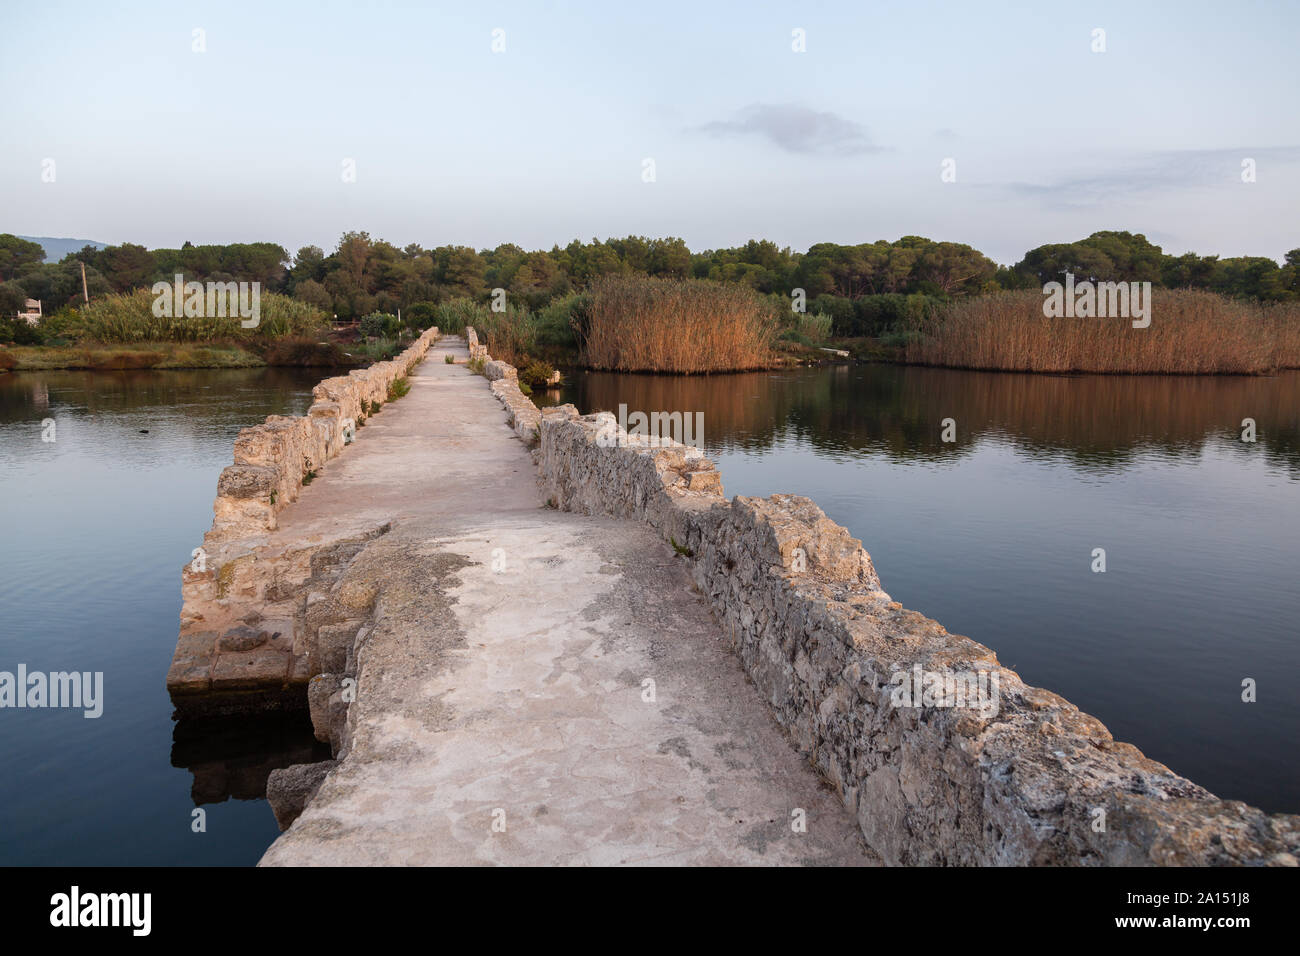 Puente romano sobre el río calich, en el norte de Cerdeña Foto de stock